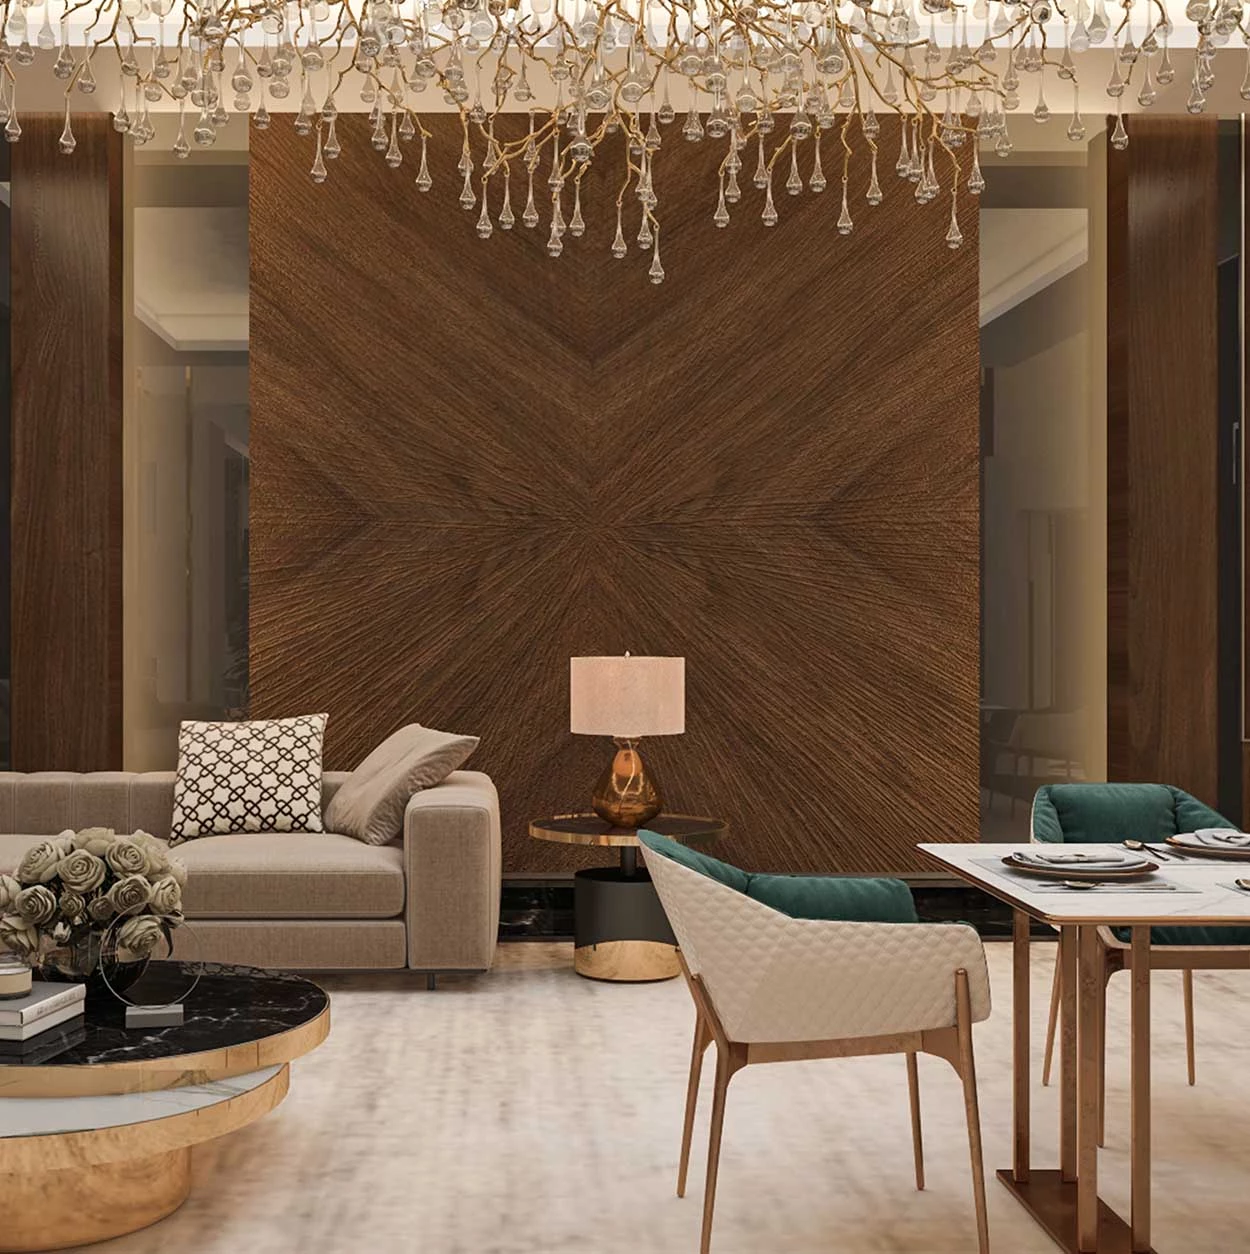 Luxury Living Room Interior Design